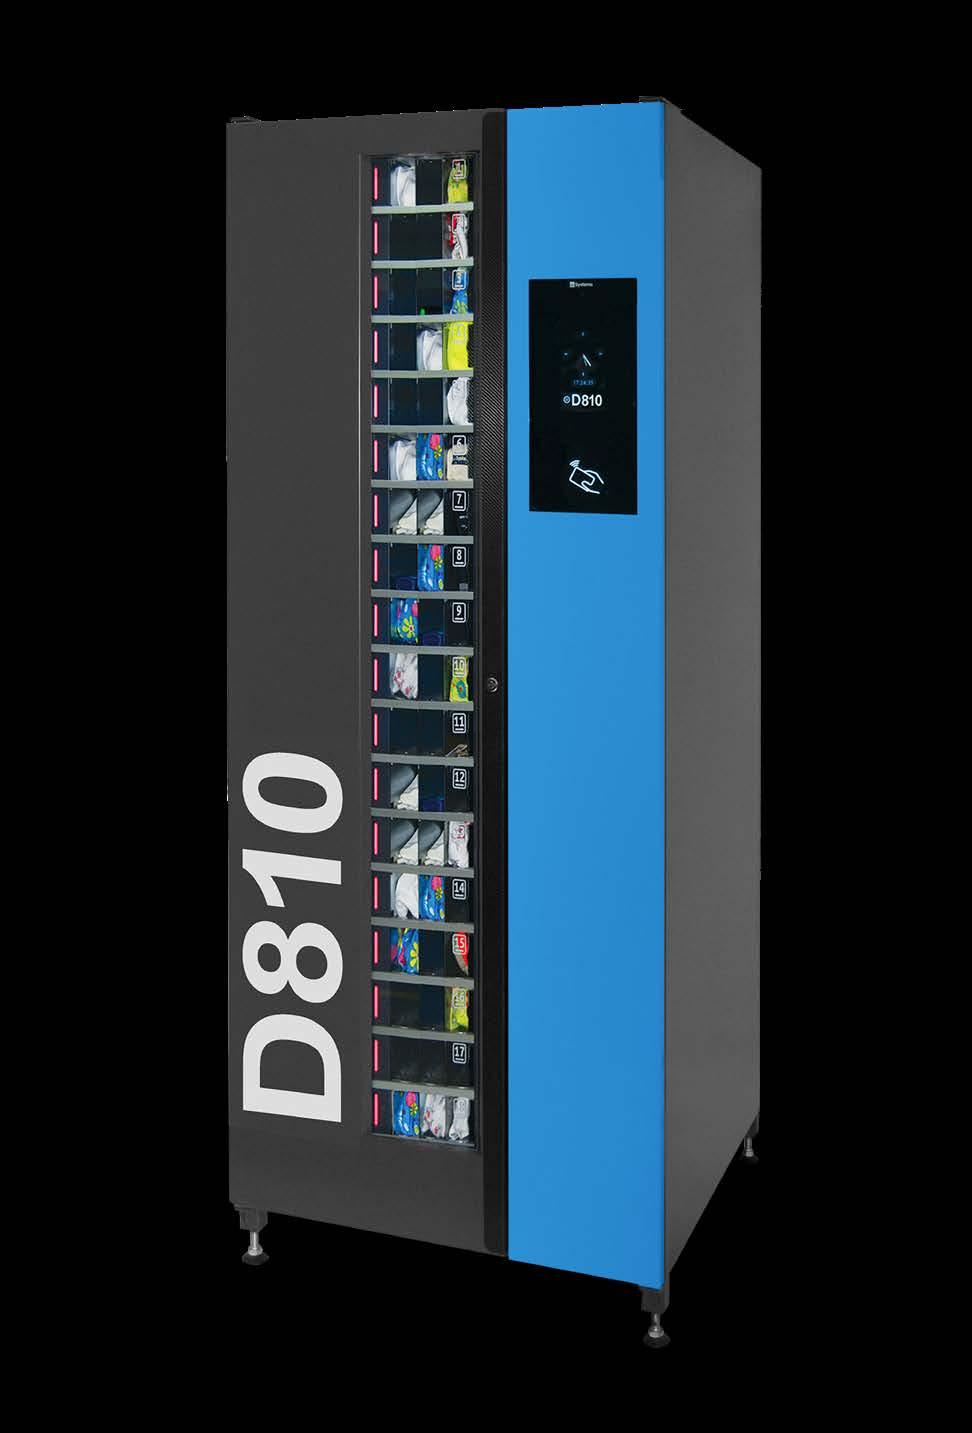 AUTOMAT WYDAJĄCY D810» REKORDOWA POJEMNOŚĆ PRZY MAŁYCH WYMIARACH Automat D810 jest samoobsługową maszyną, automatycznie wydającą do 810 różnych produktów.